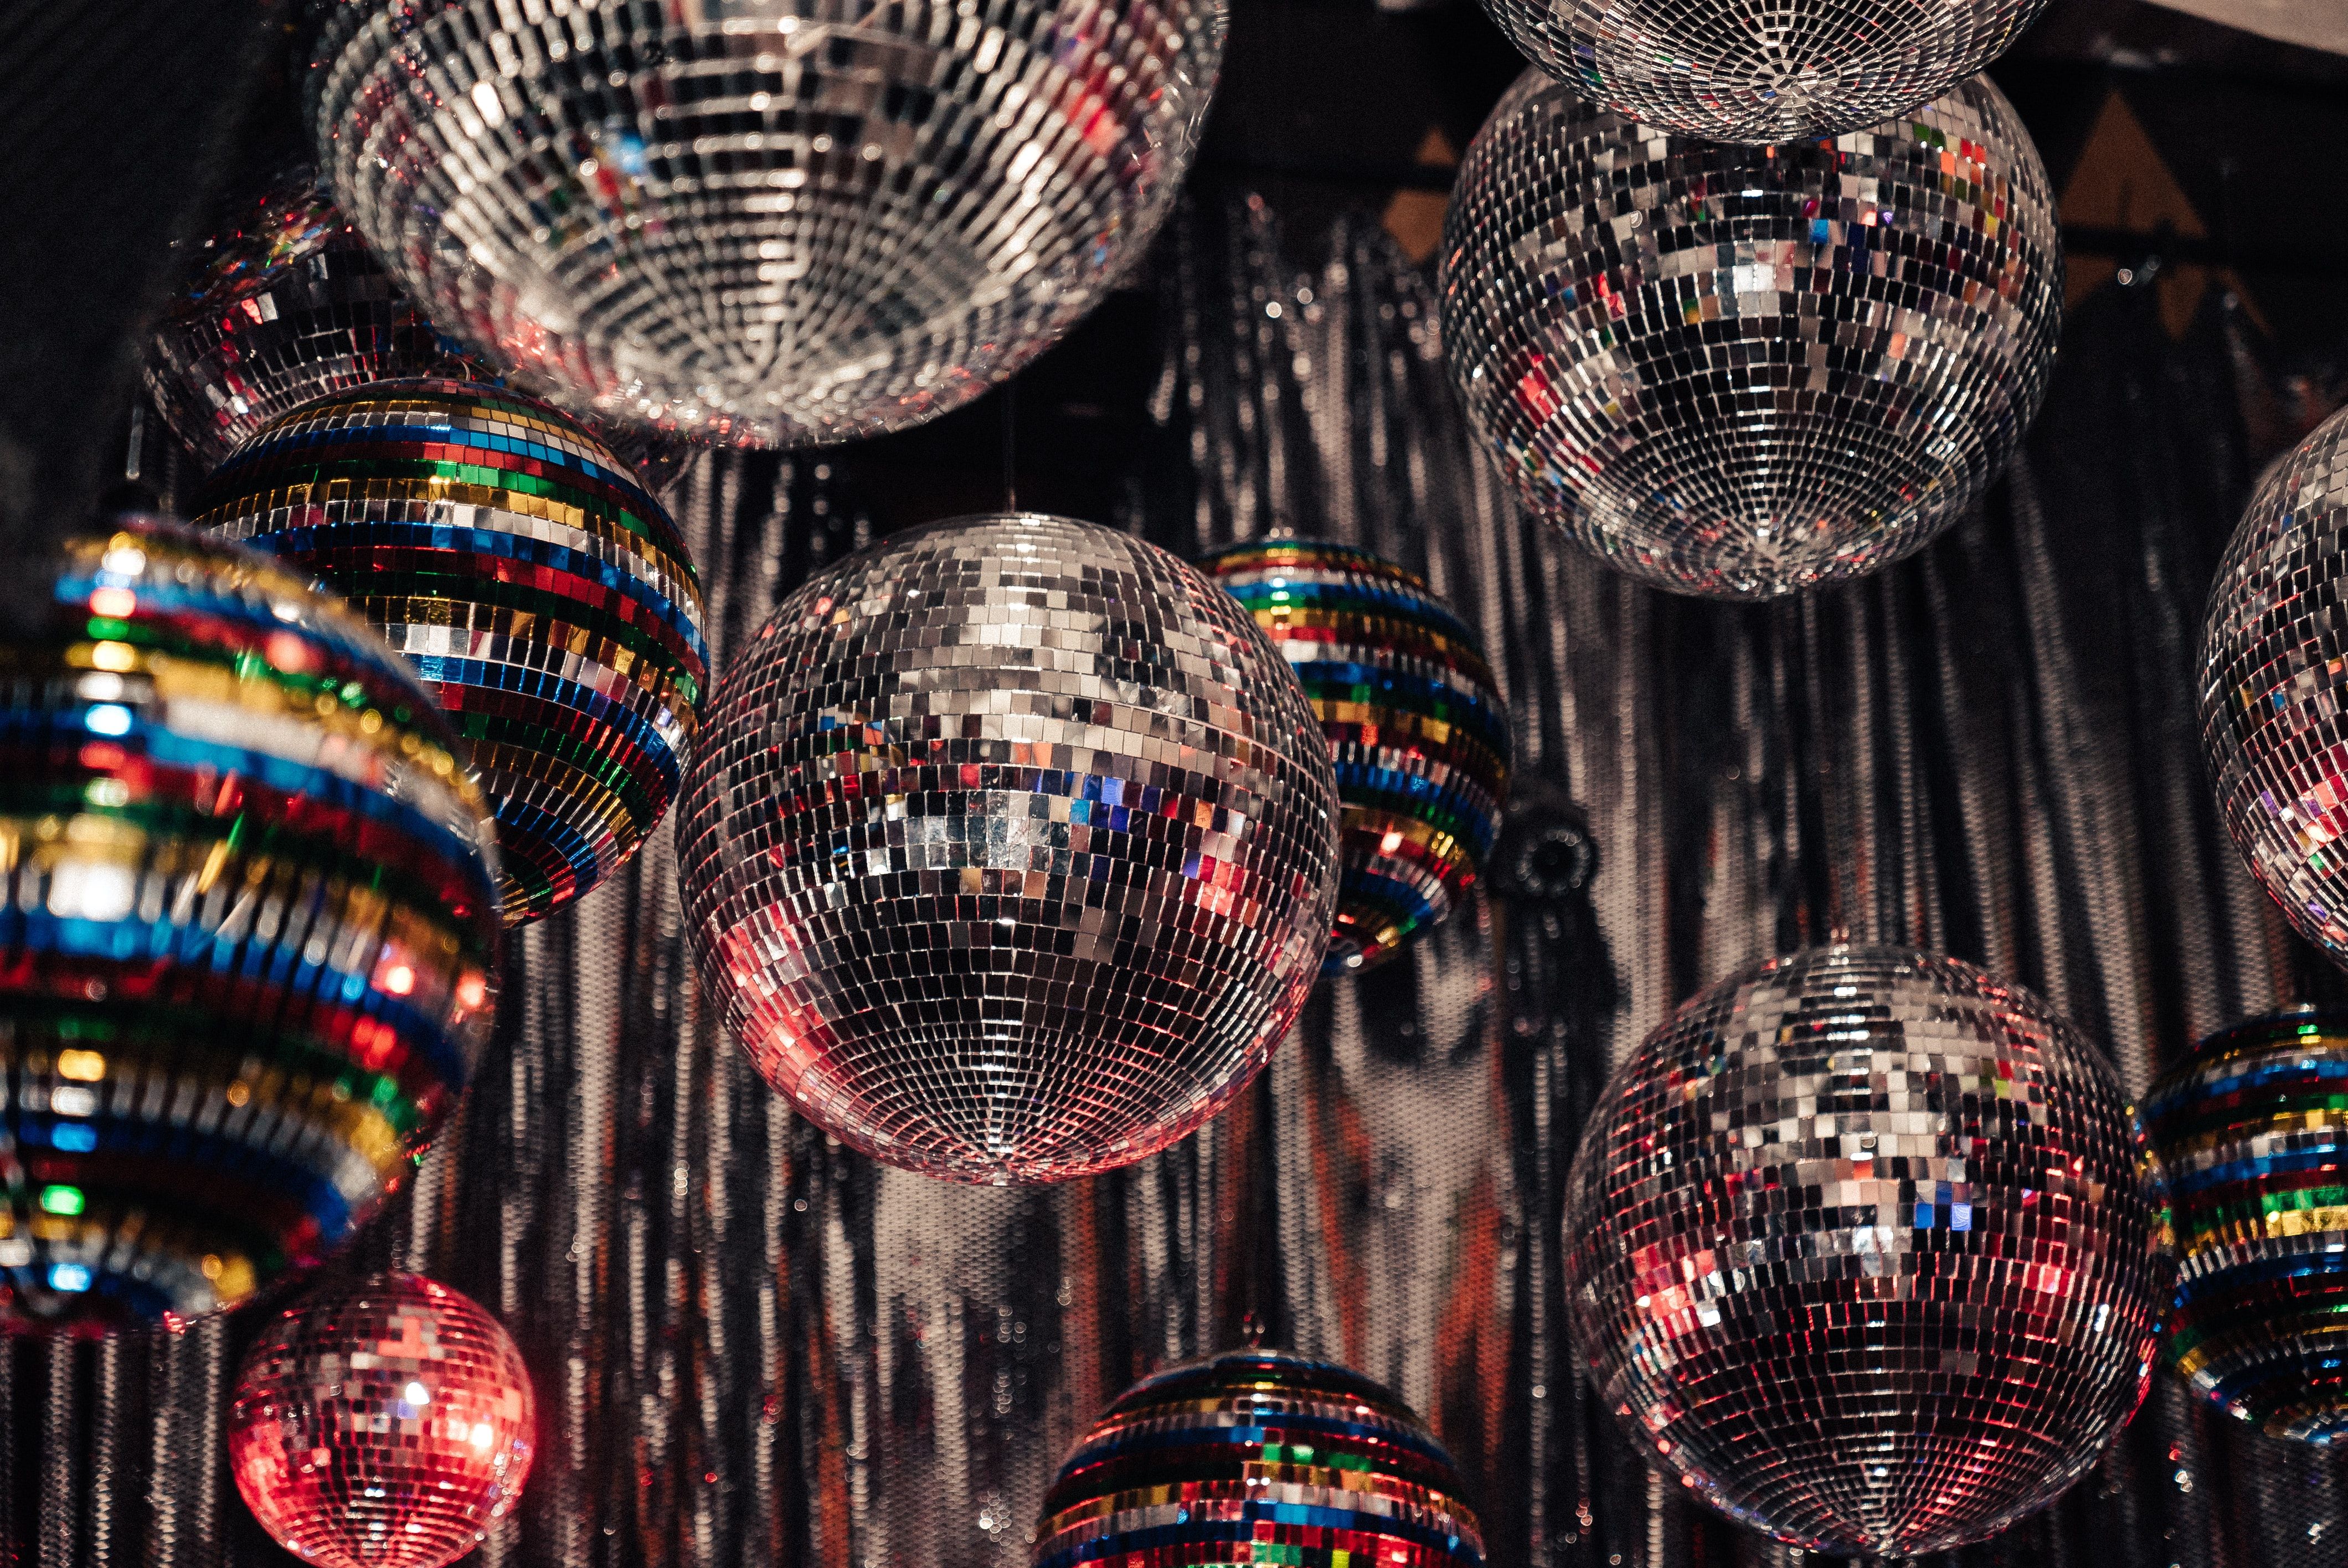 A bunch of disco balls.